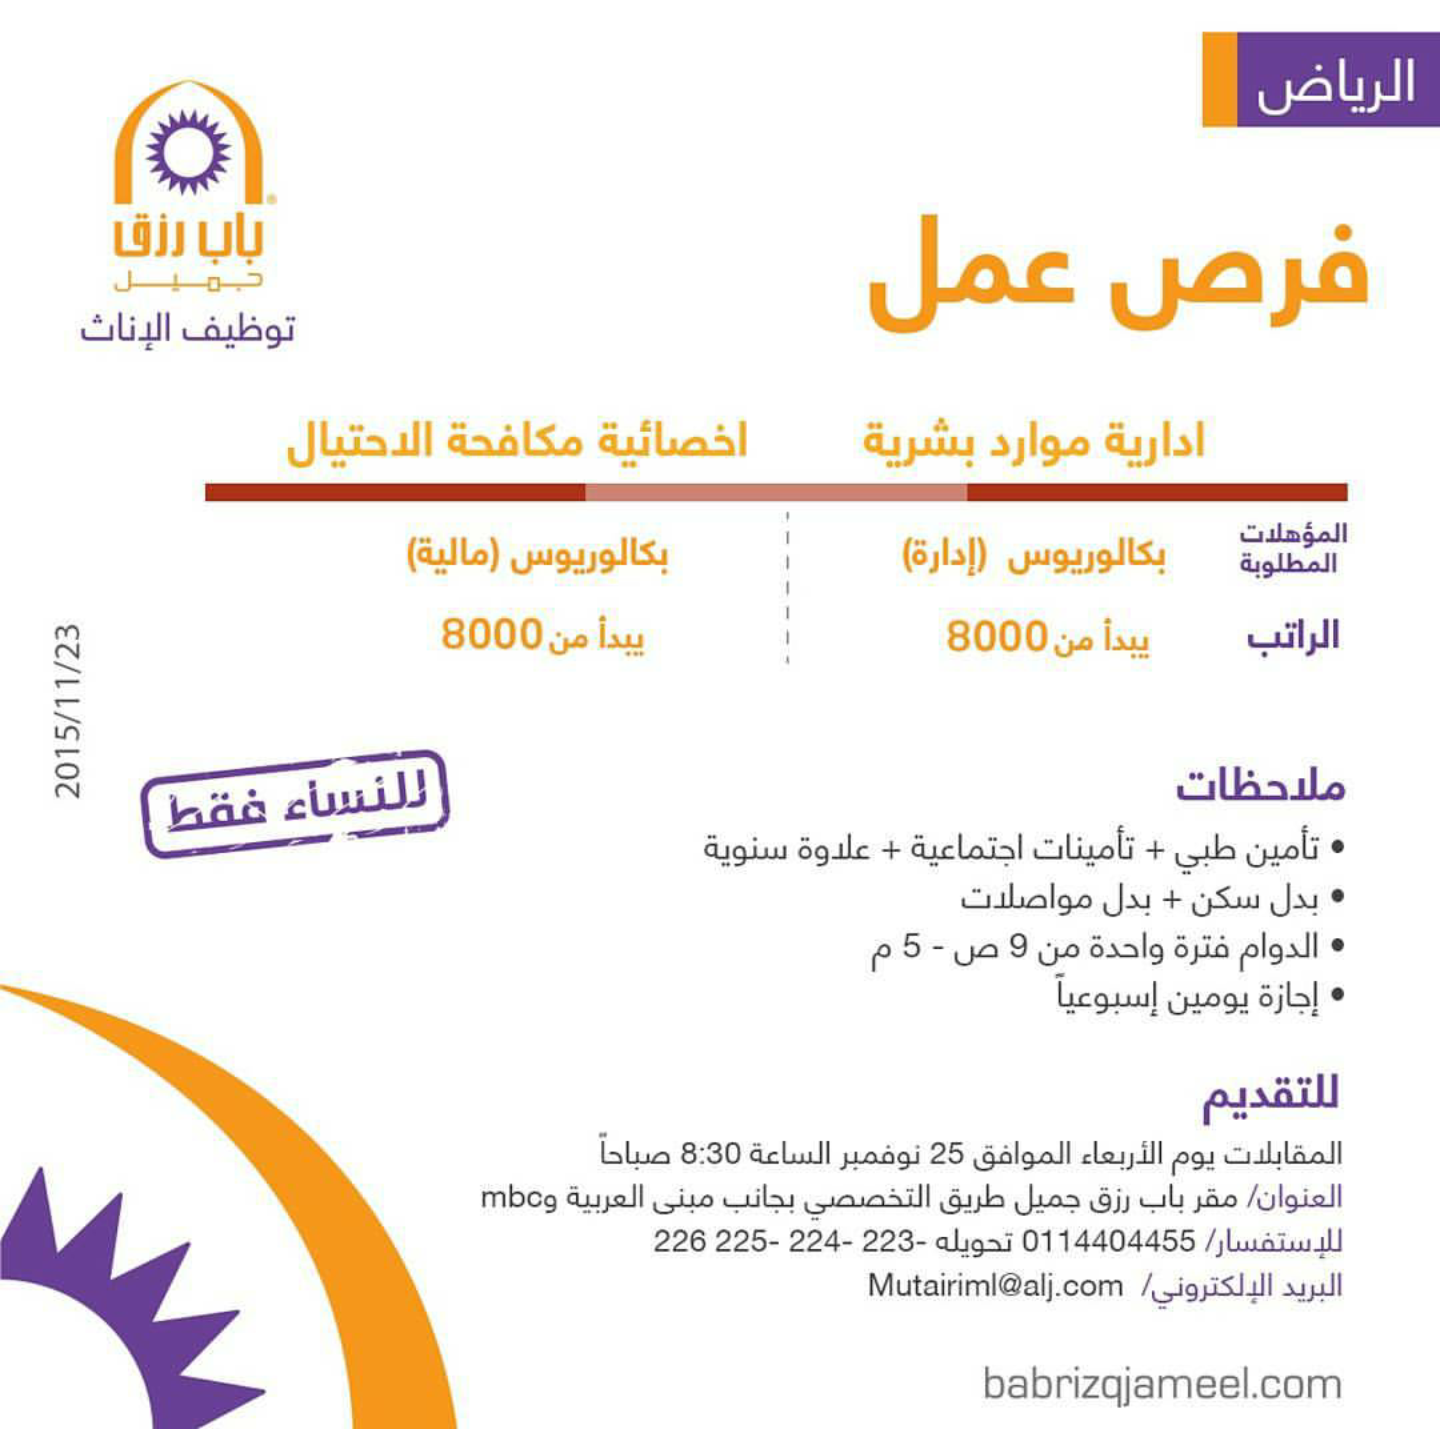 مطلوب ادارية موارد بشرية وأخصائية مكافحة احتيال - الرياض